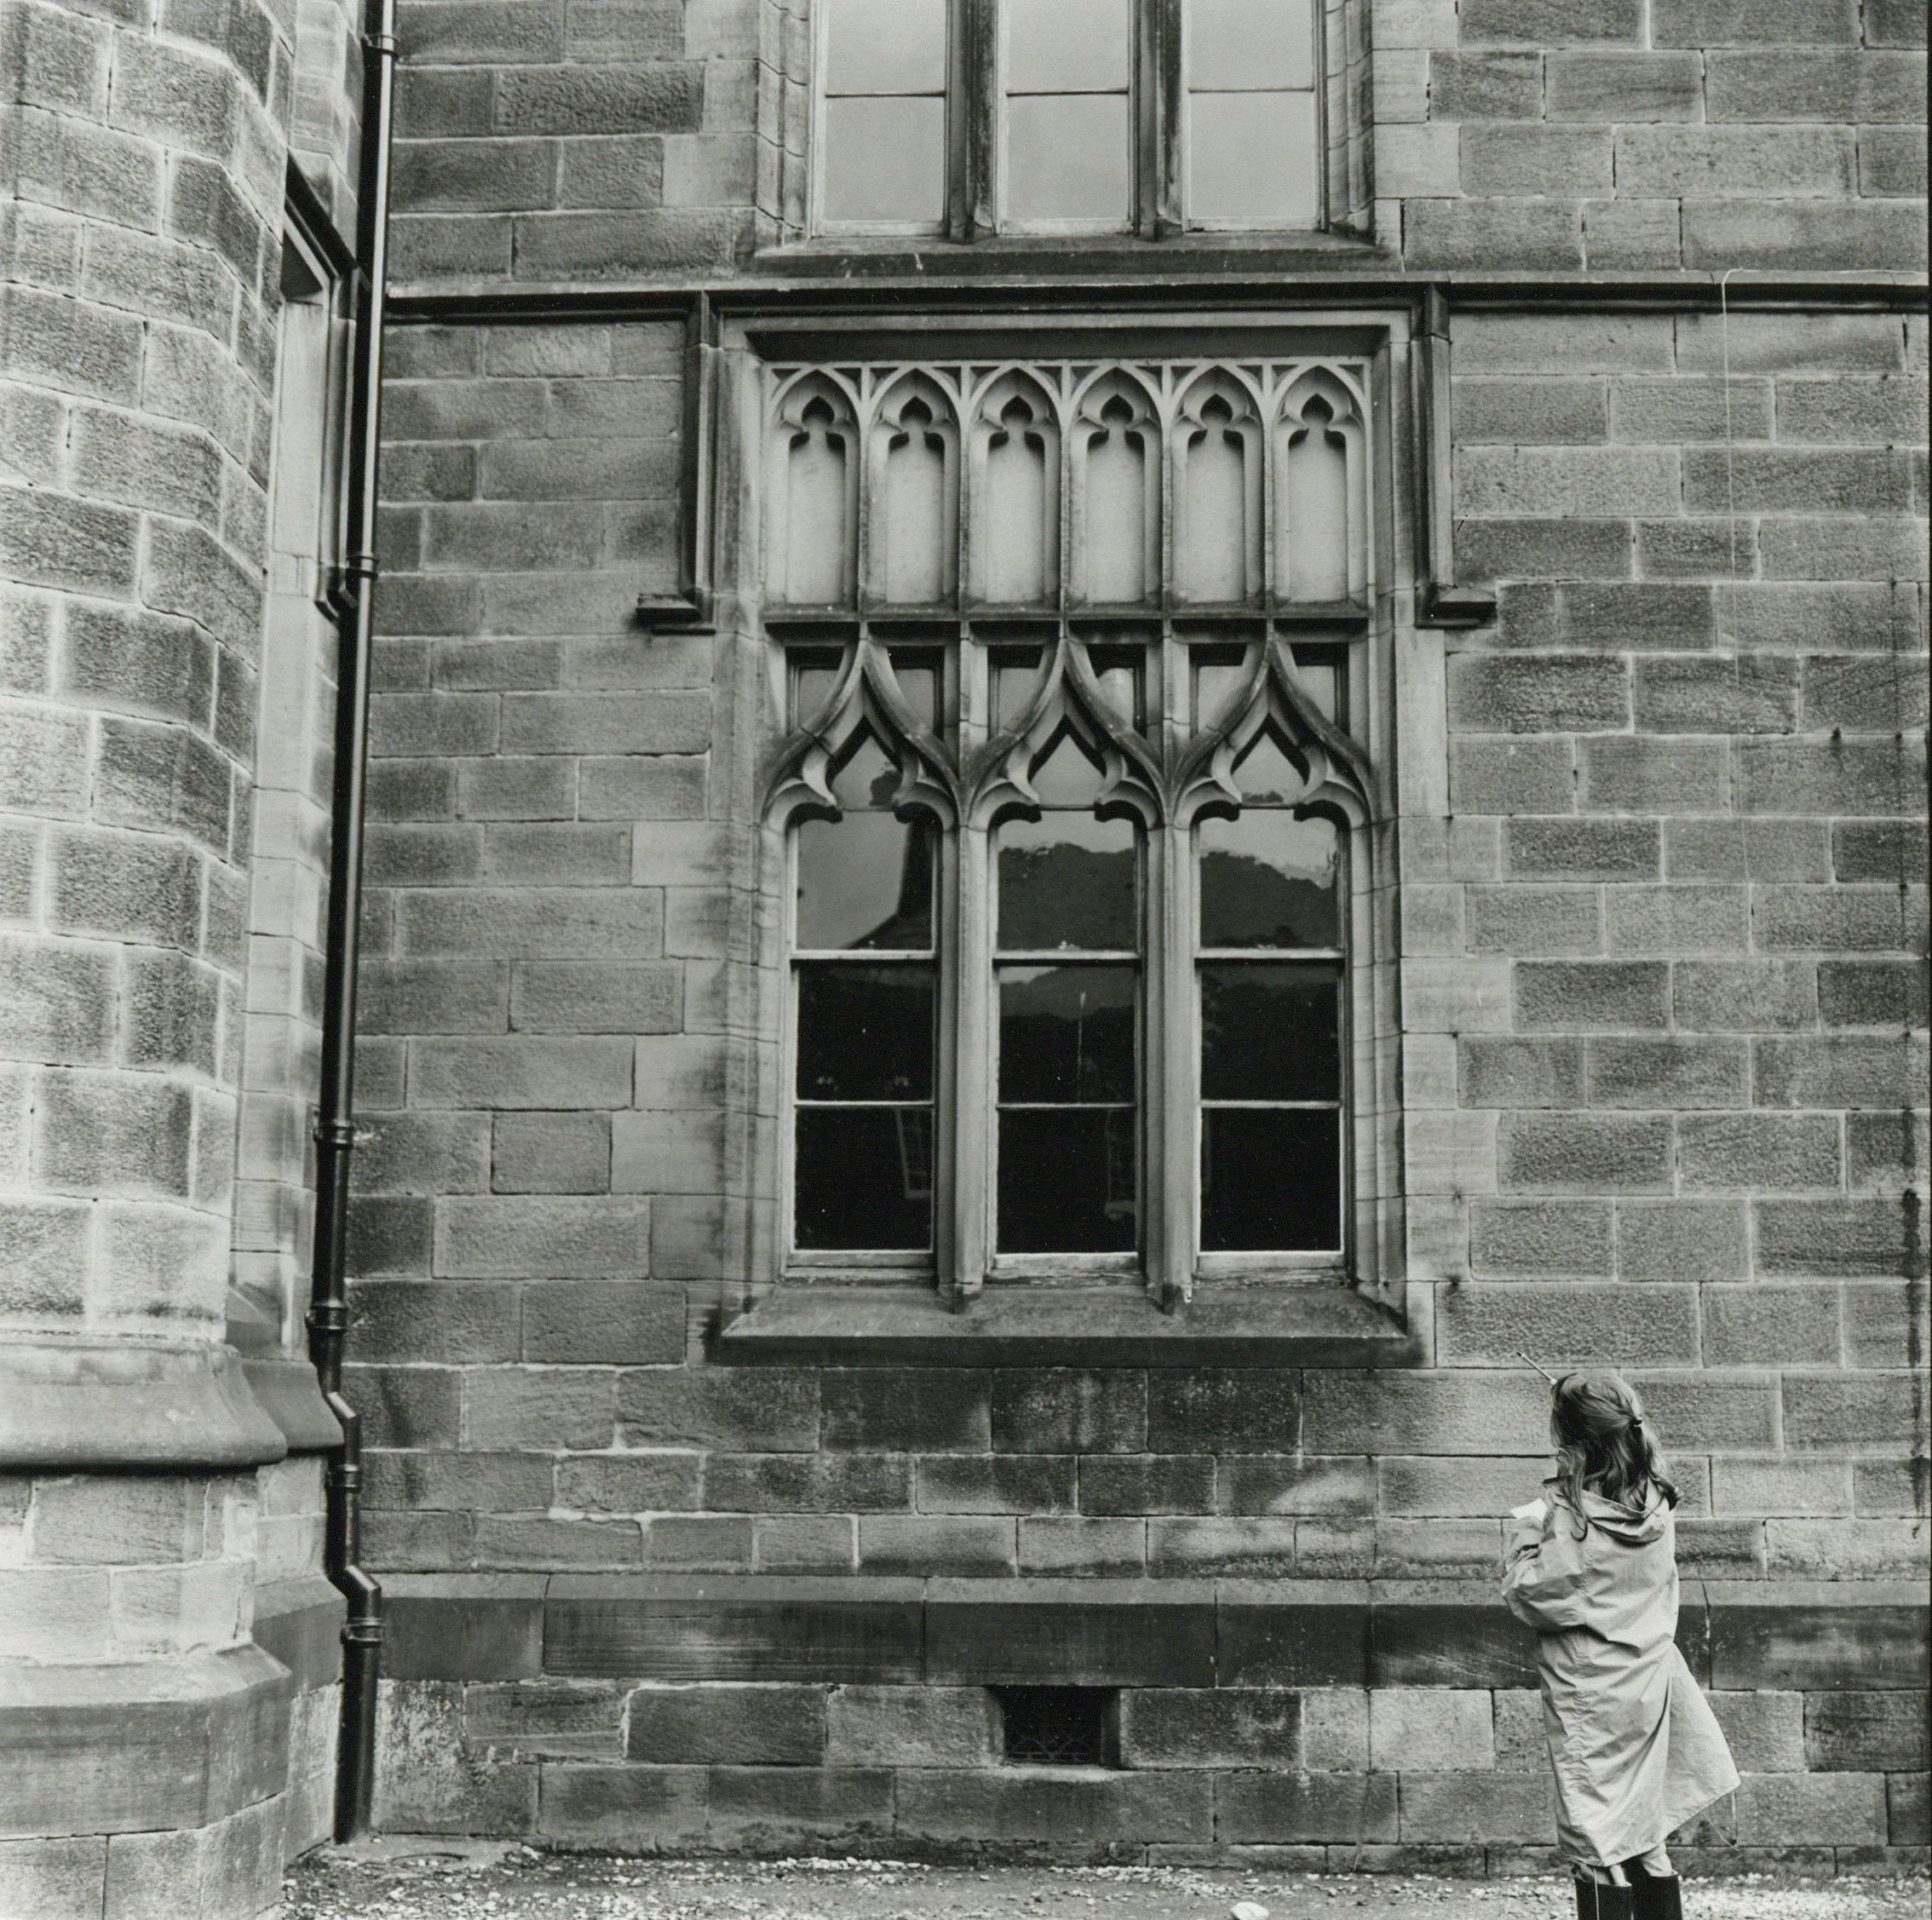 Rosemary Ellis (1910-1988)
Windows XV
Photographie d'épreuve originale pour Windows dans la série Outlooks and Insights publiée par Bodley Head, par Rosemary & Charlotte Ellis.
Tirage photographique à la gélatine d'argent
13 x 13cm

Rosemary Ellis